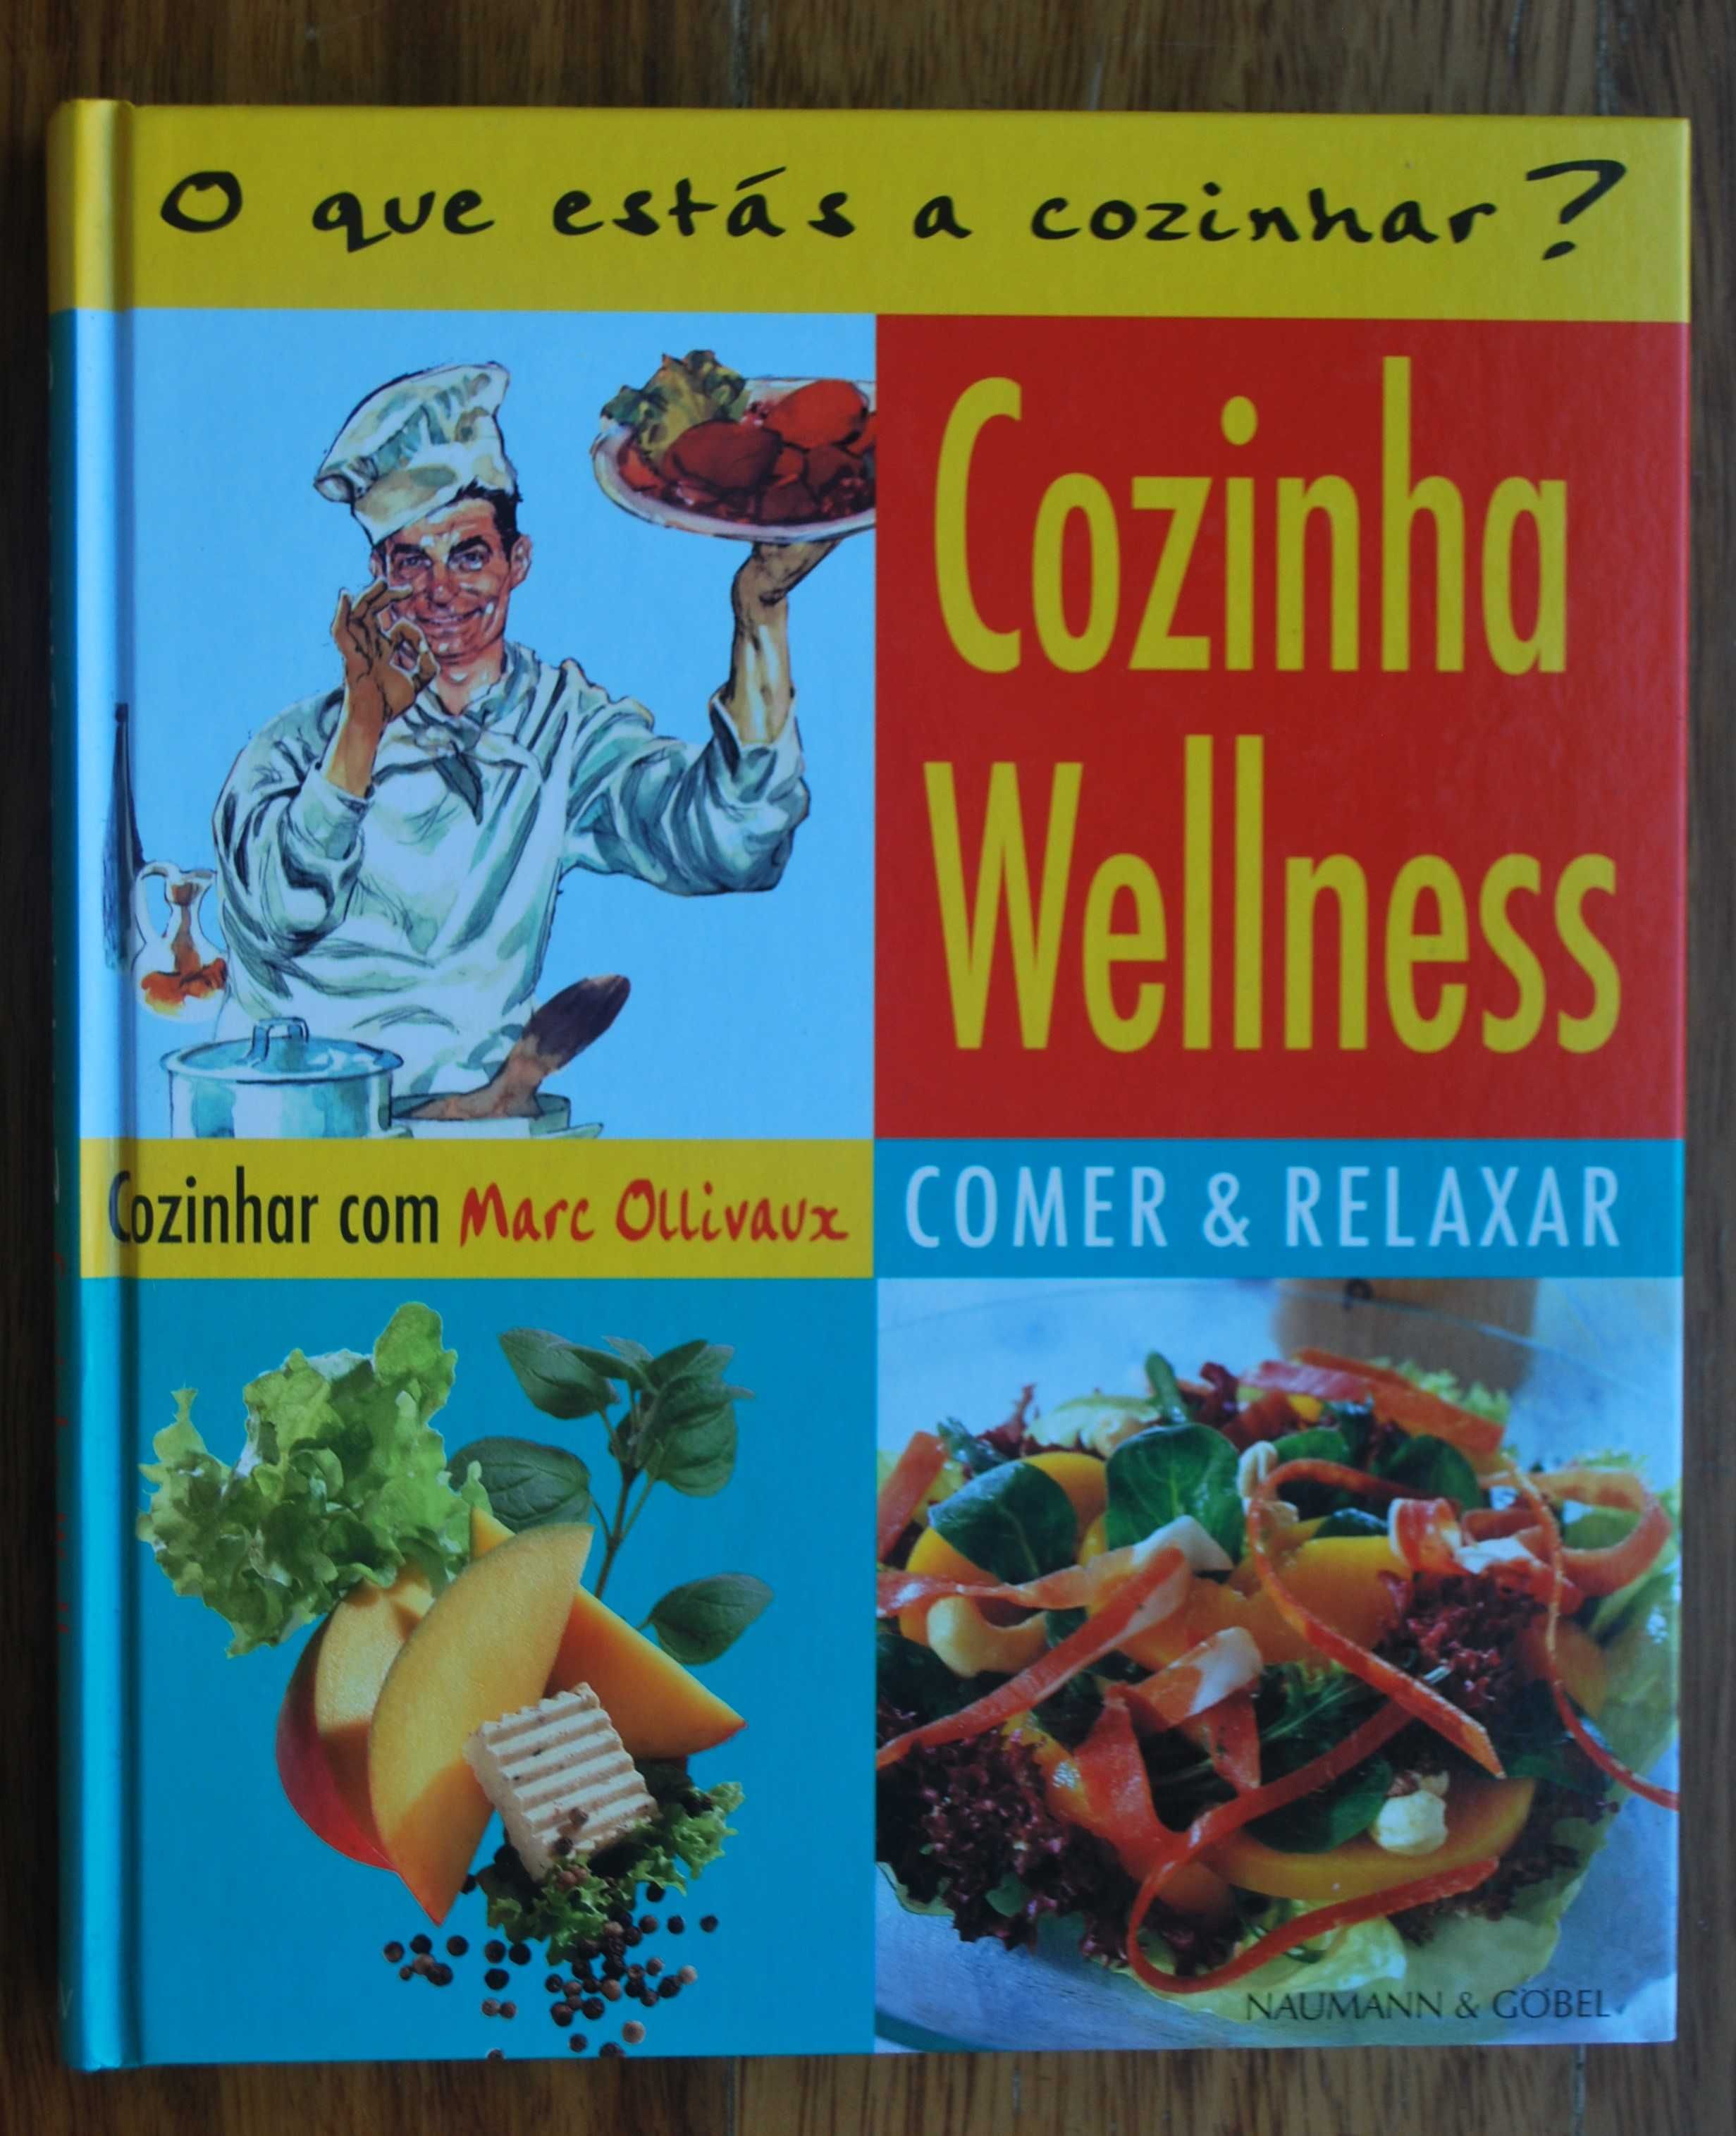 Cozinha Wellness (Comer & Relaxar) de Marc Ollivau